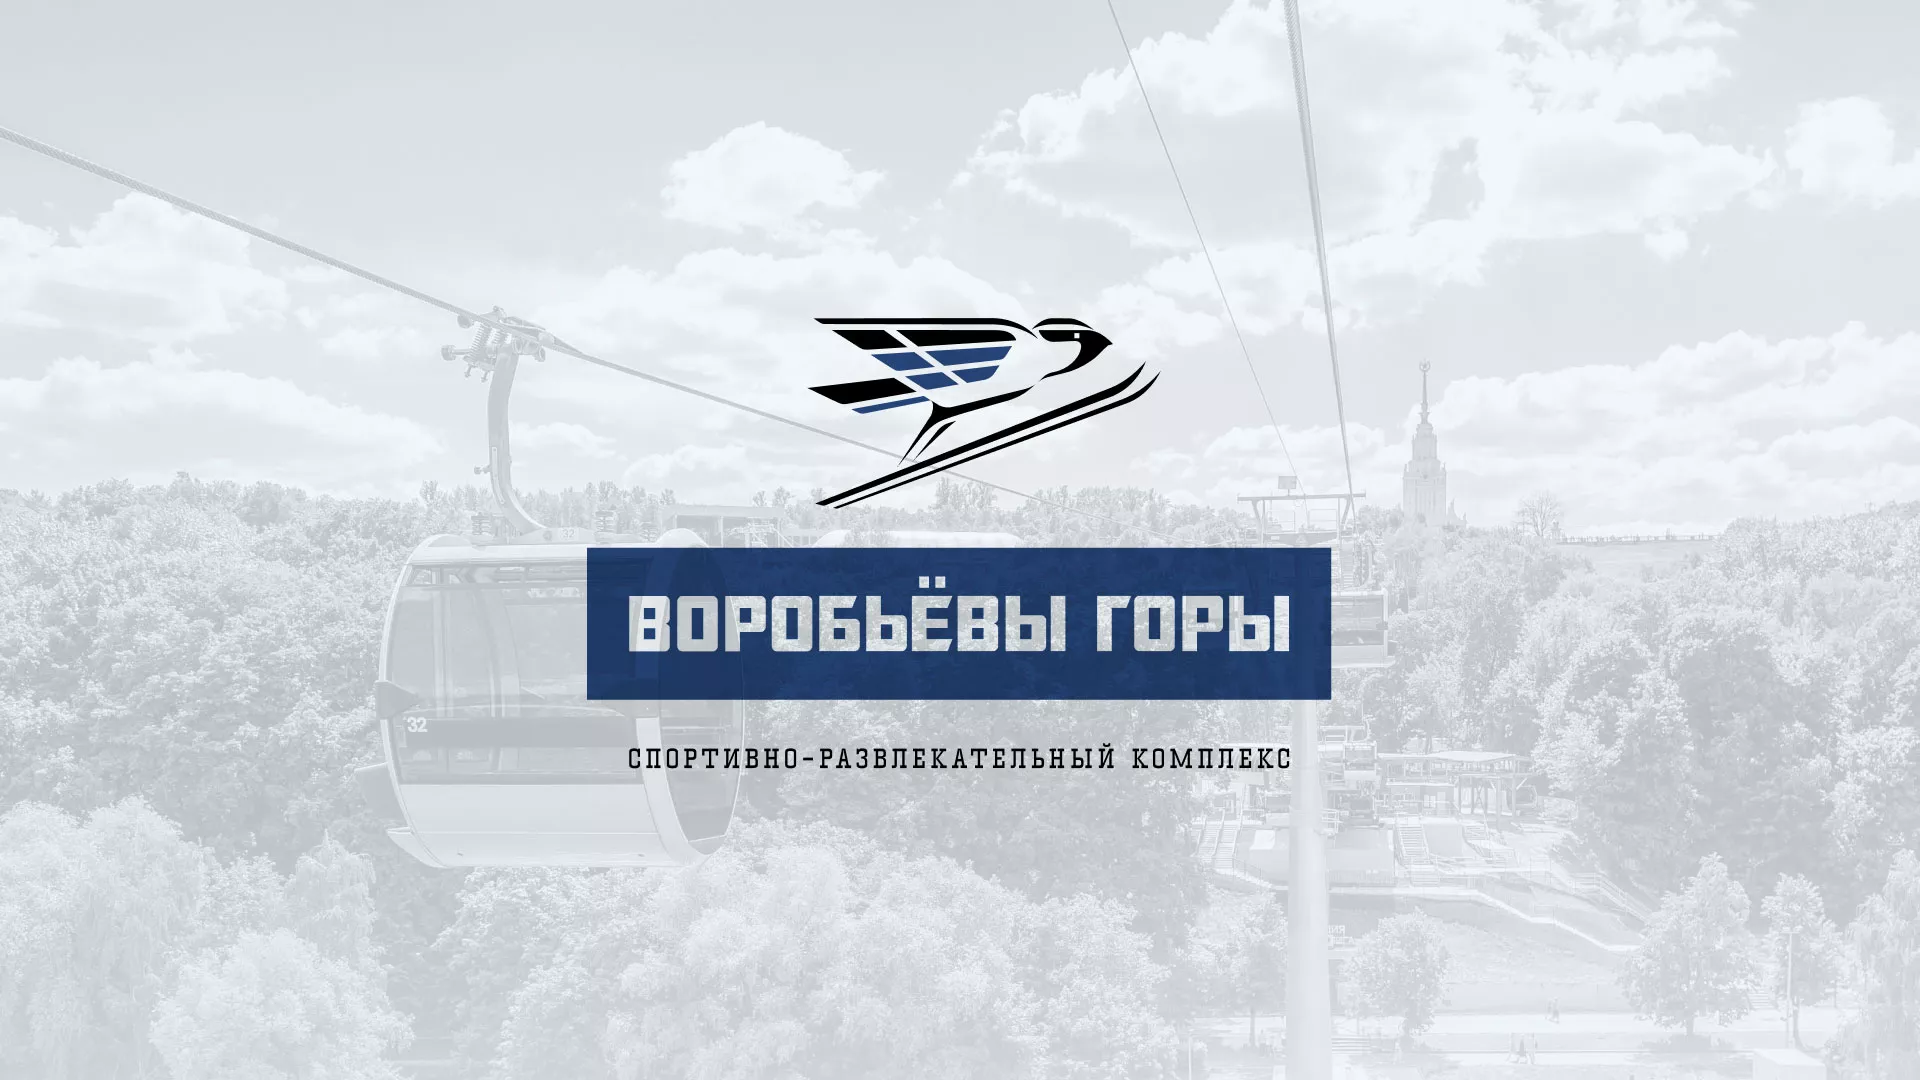 Разработка сайта в Каменногорске для спортивно-развлекательного комплекса «Воробьёвы горы»